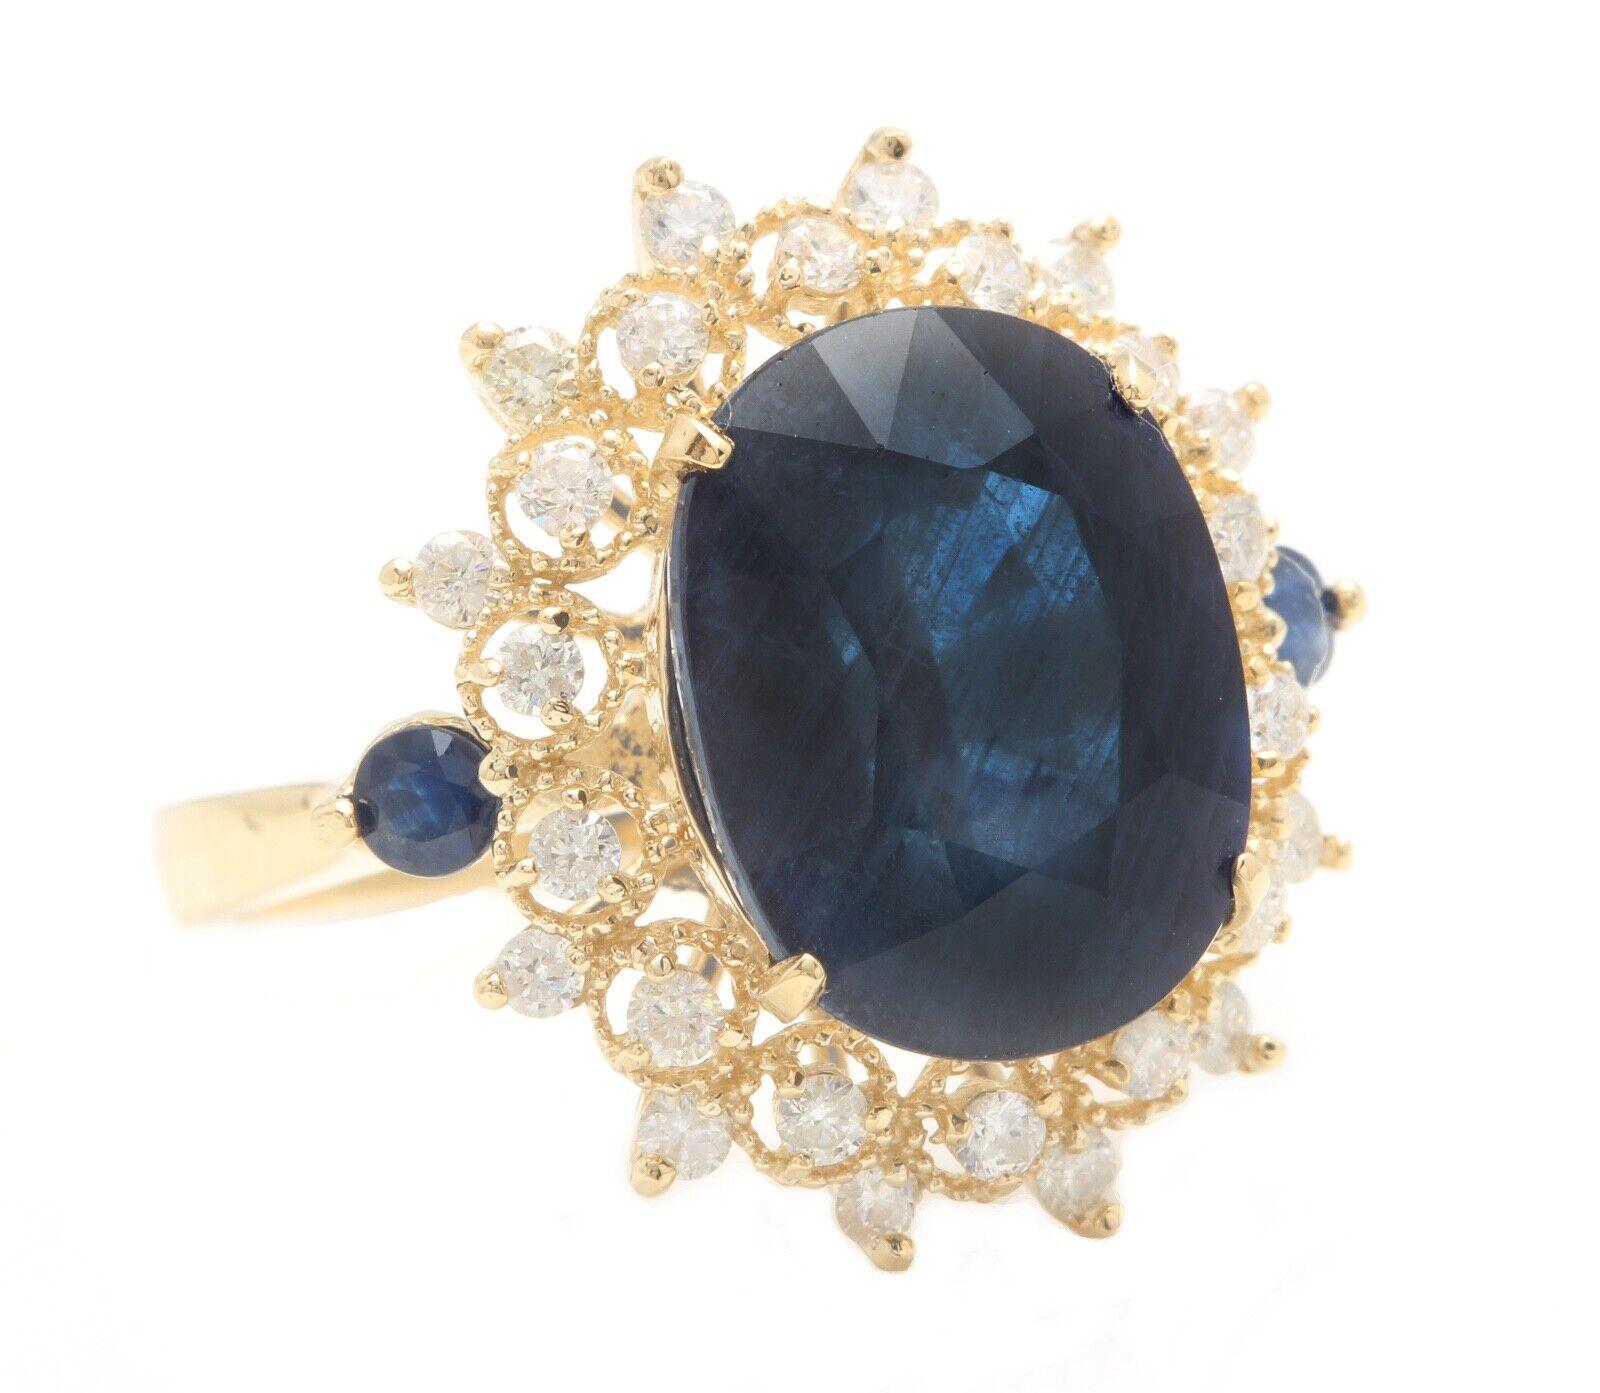 8,55 Karat Exquisite natürlichen blauen Saphir und Diamant 14K Solid Gelbgold Ring

Empfohlener Wiederbeschaffungswert ca. $6,000.00

Gesamtgewicht des blauen Saphirs ist: Ca. 8.00 Karat 

Saphir Maße: Ca. 13,85 x 10,70 mm

Sapphire Behandlung: